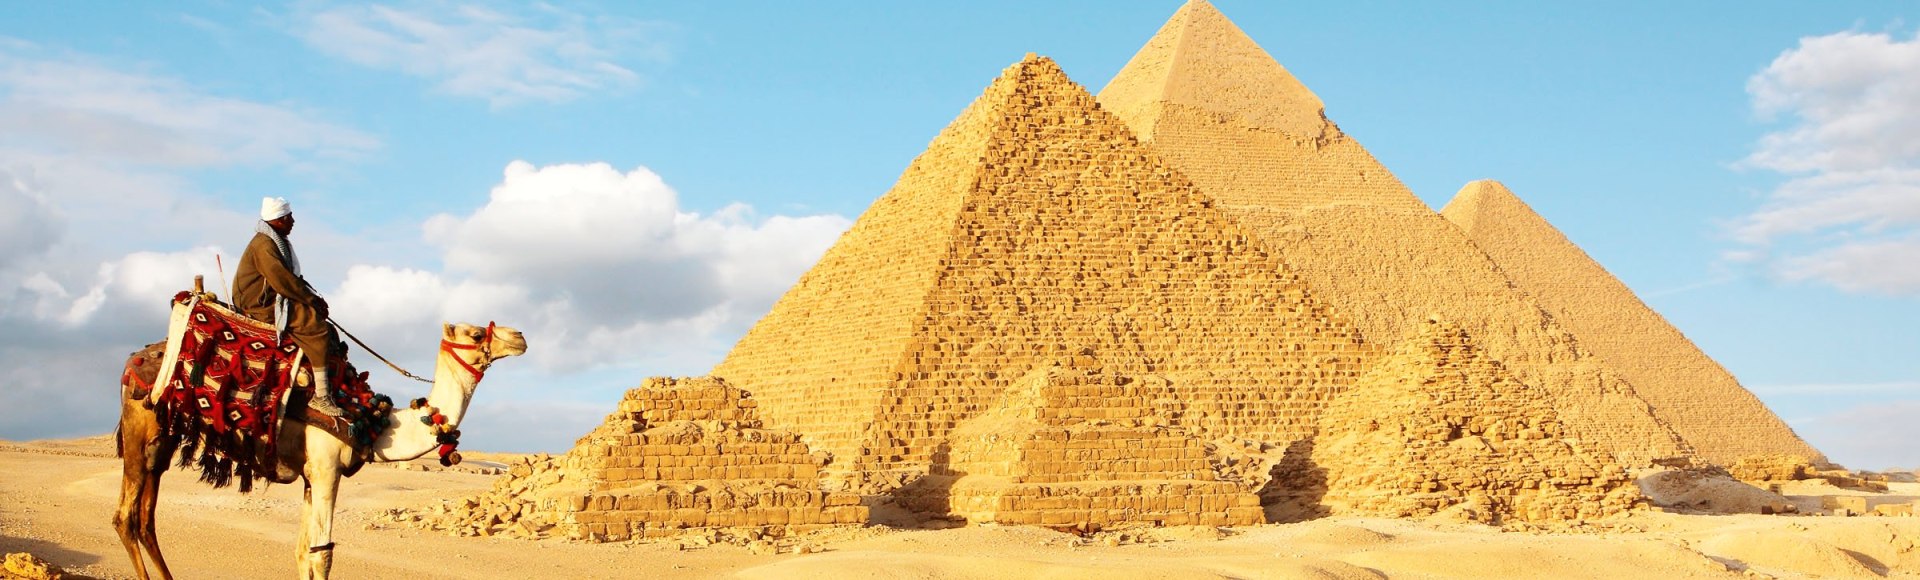 Die Pyramiden von Gizeh, Ägypten, © Istockphoto.com©sculpies